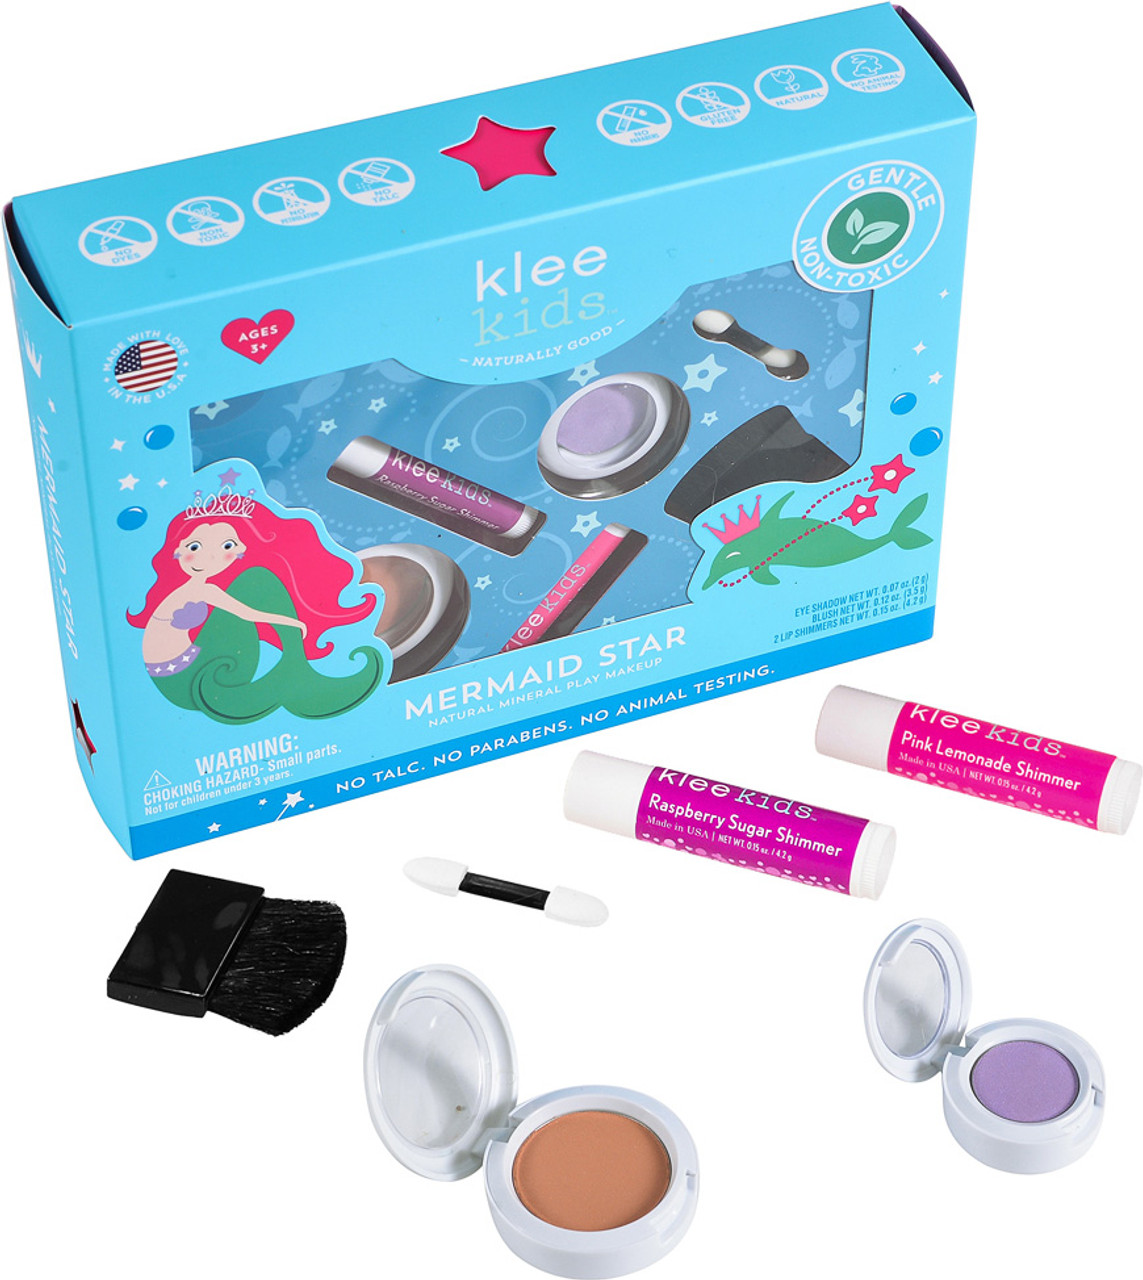 Klee Kids Natural Mineral Play Makeup Kit Mermaid Star 1